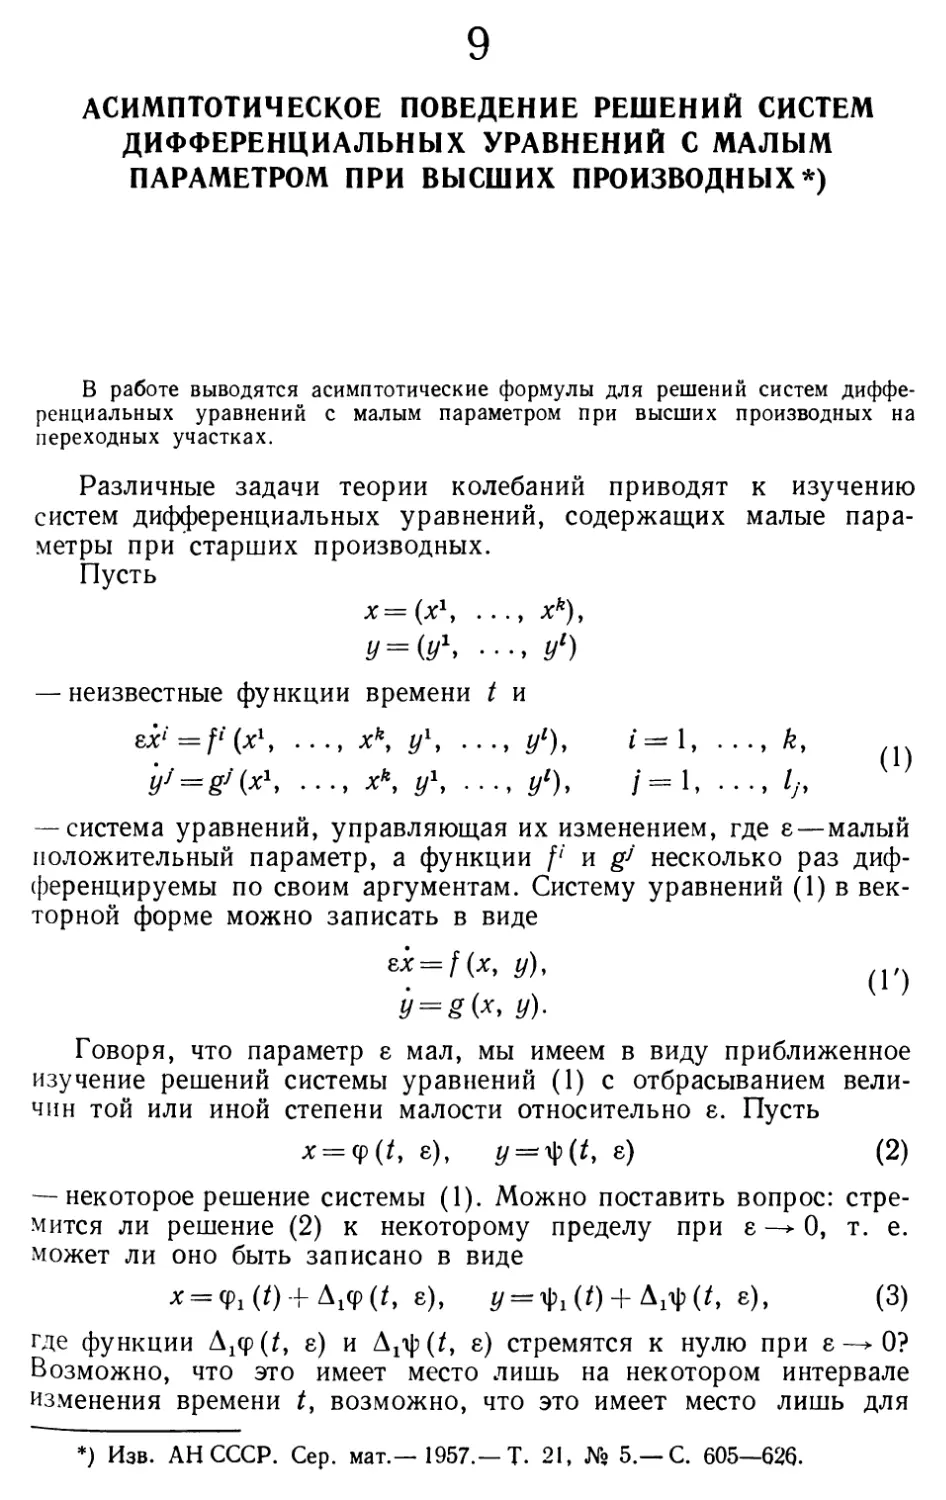 9. Асимптотическое поведение решений систем дифференциальных уравнений с малым параметром при высших производных